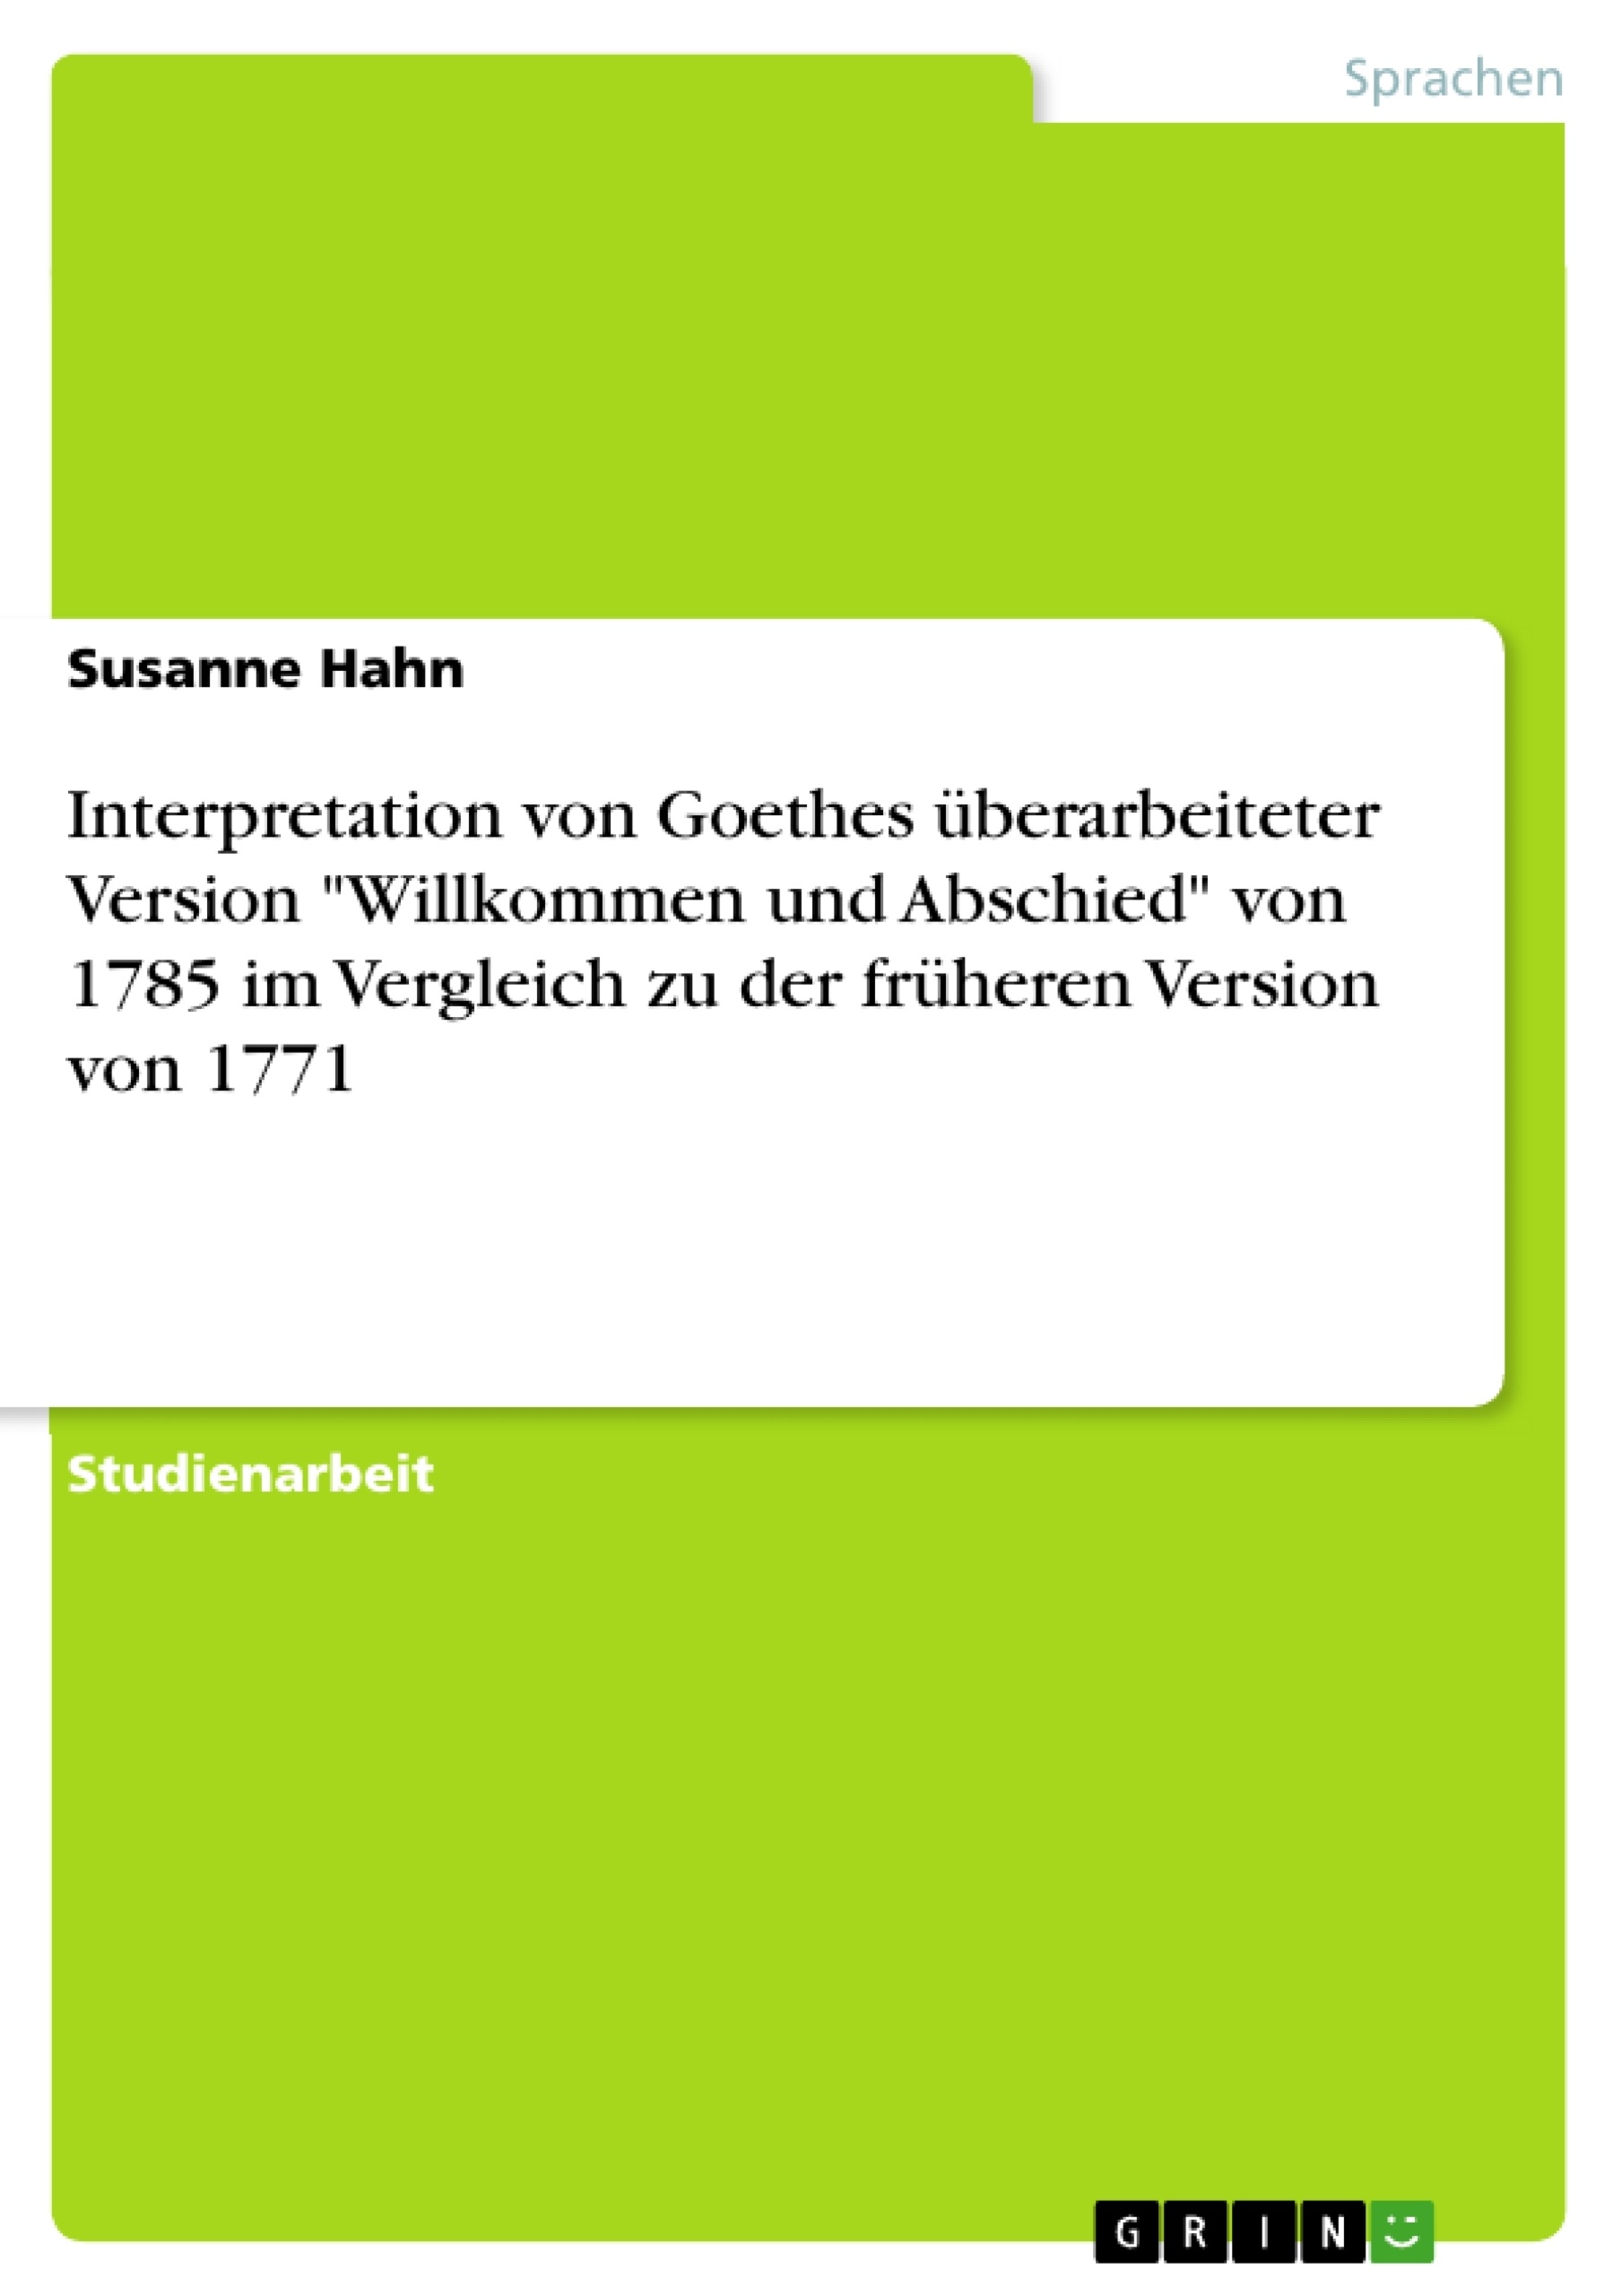 Title: Interpretation von Goethes überarbeiteter Version "Willkommen und Abschied" von 1785 im Vergleich zu der früheren Version von 1771